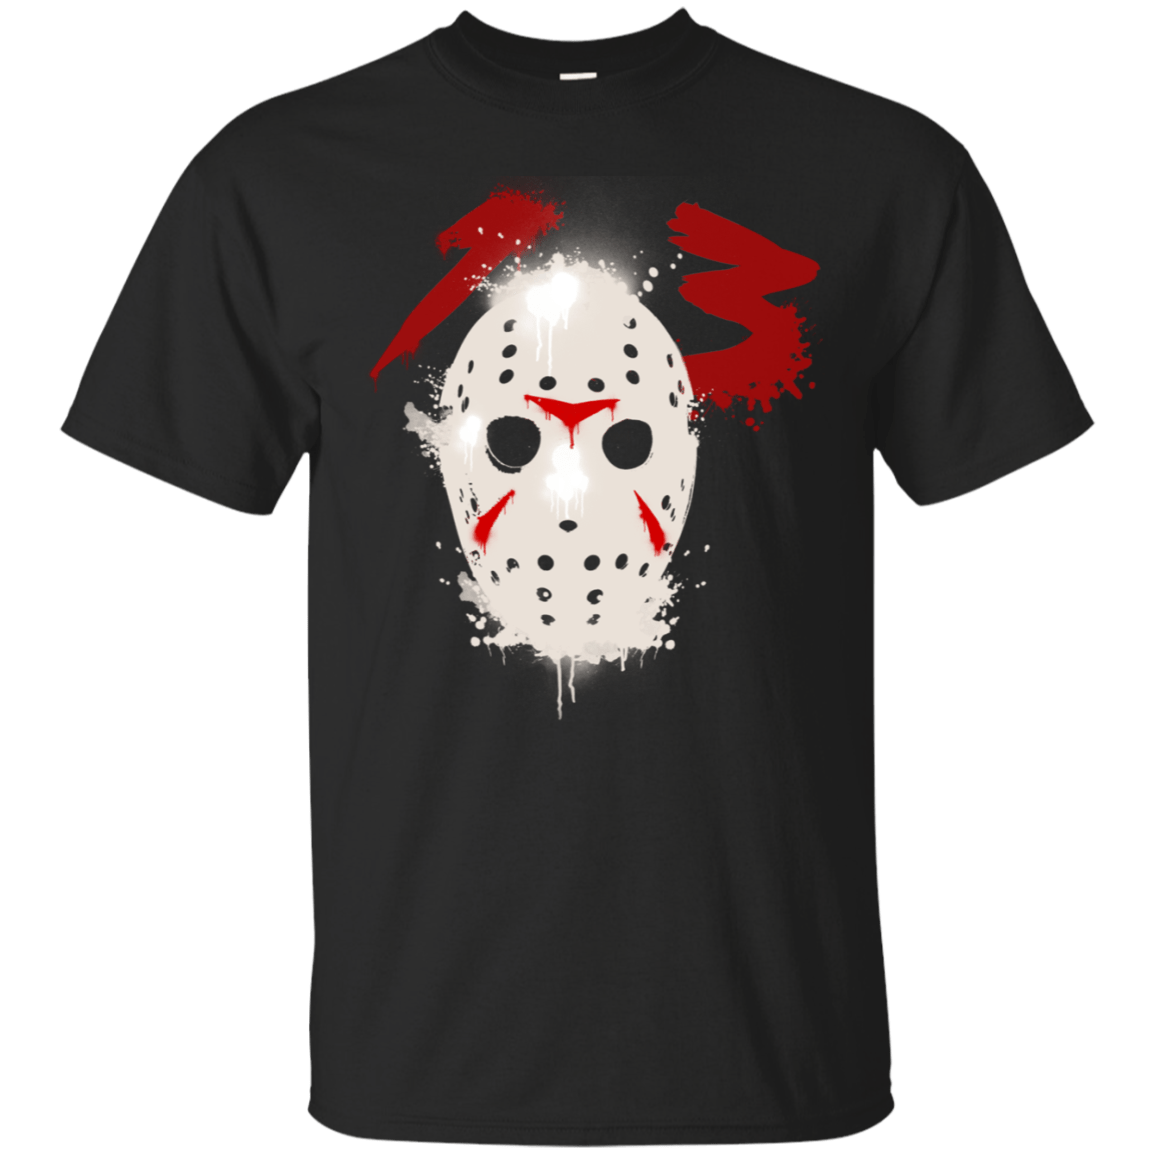 T-Shirts Black / S Jason T-Shirt